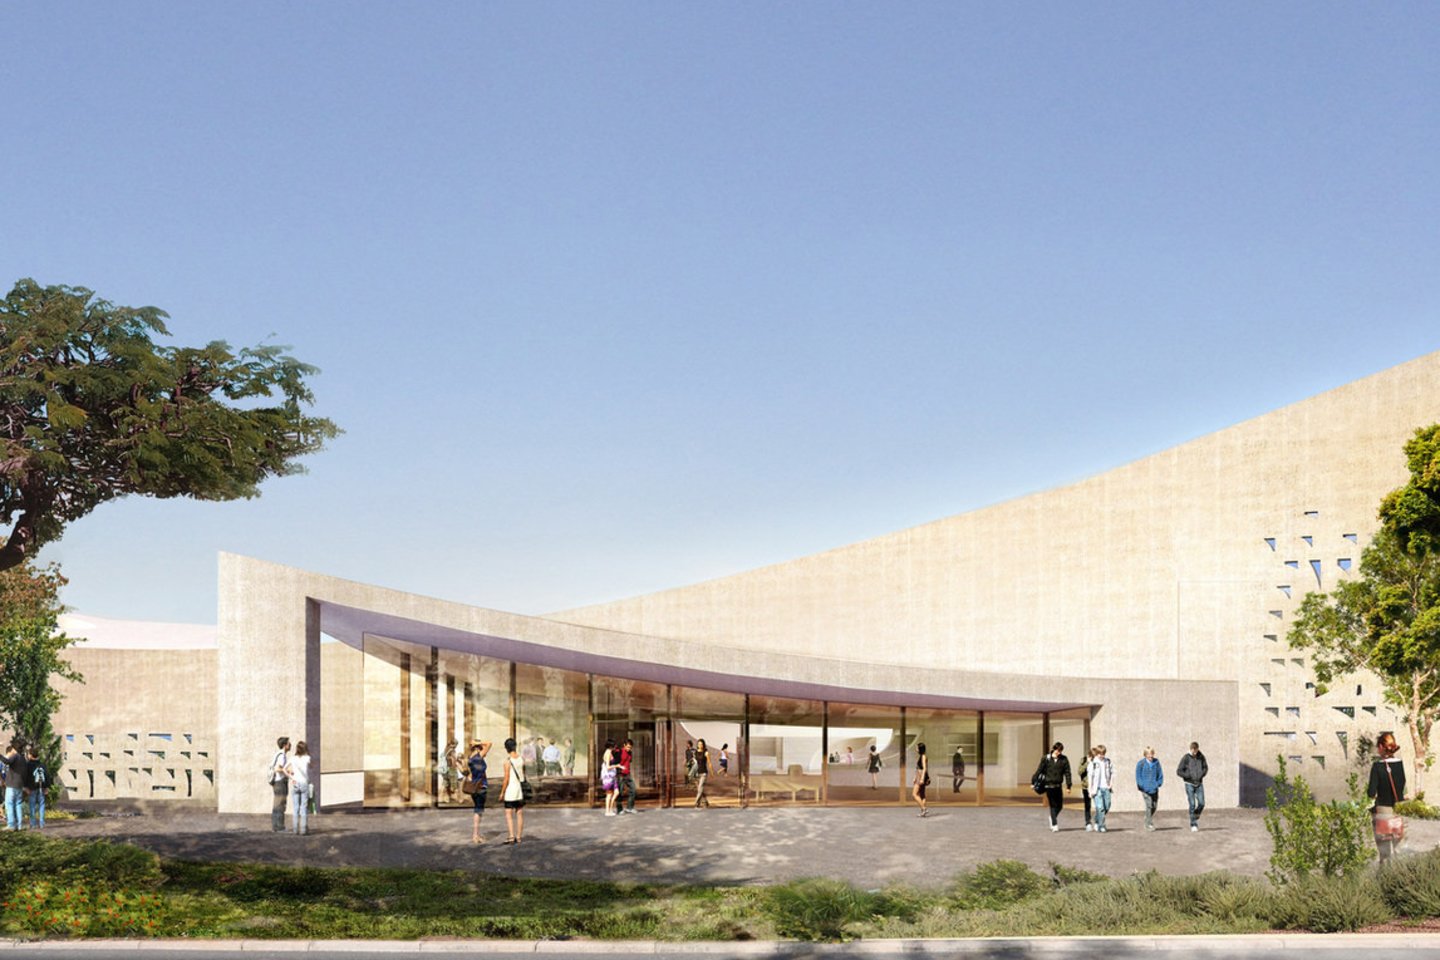  Dar vienas šiais metais Izraelyje baigiamas įgyvendinti projektas – Izraelio nacionalinė biblioteka, kurią suprojektavo „Herzog &amp; de Meuron“ kartu su vietos architektų studija „Mann Shinar Architects &amp; Planners“.<br>Herzog &amp; de Meuron / archdaily.com vizual.